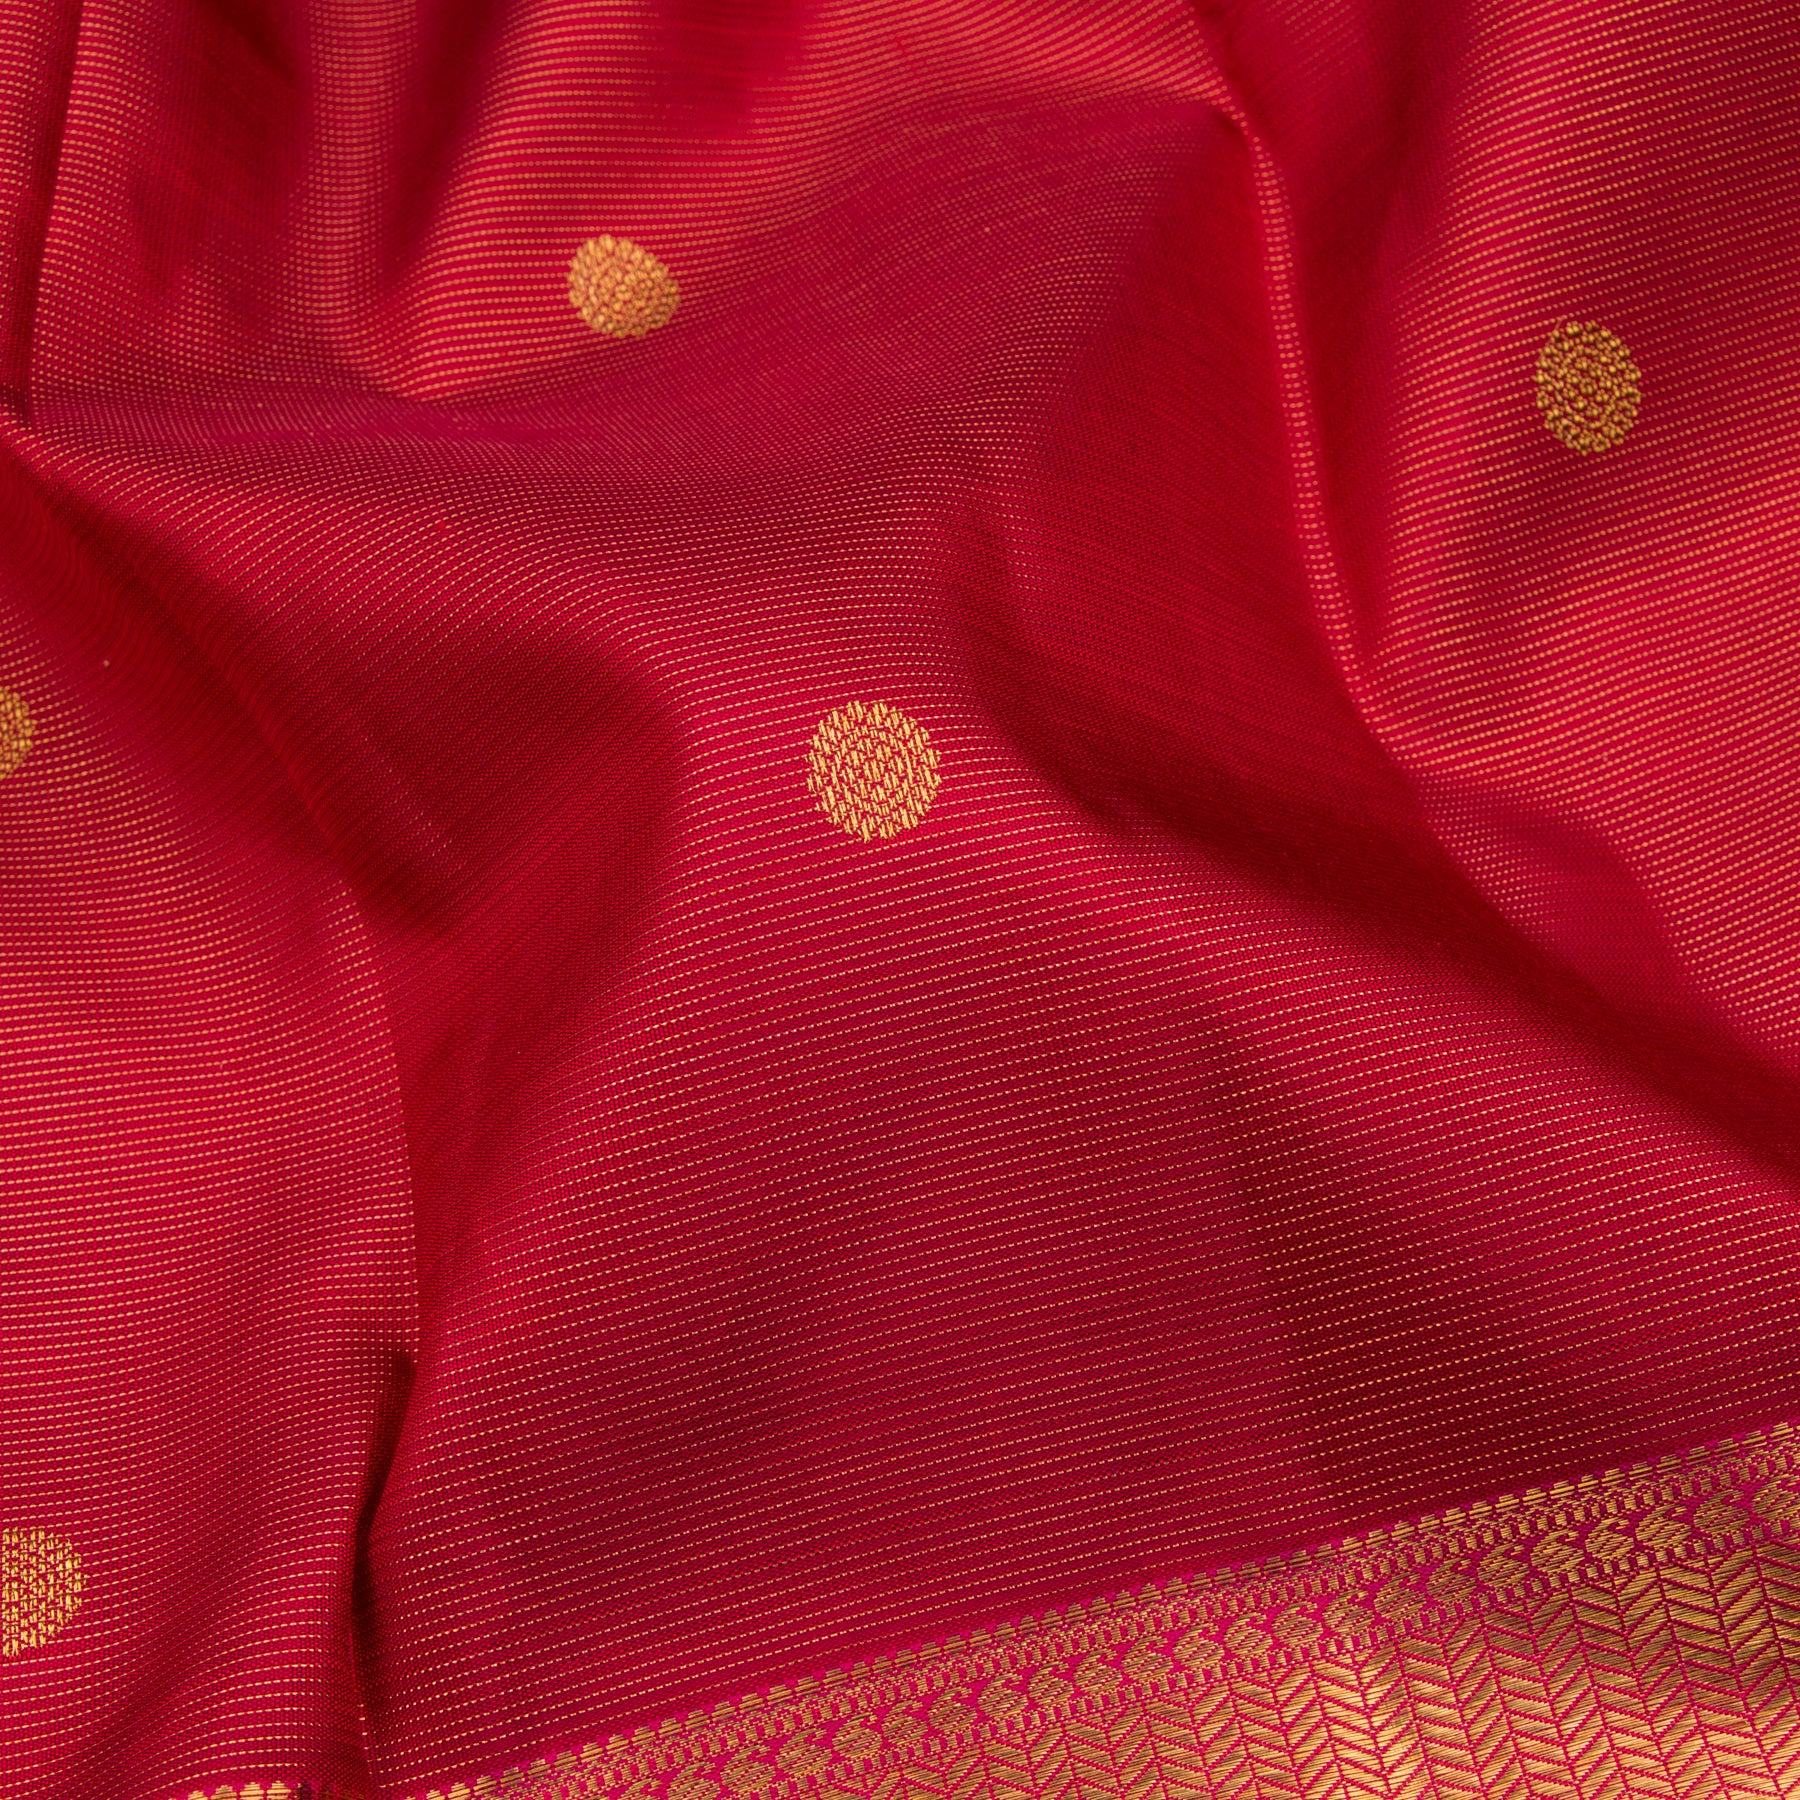 Kanakavalli Kanjivaram Silk Sari 23-110-HS001-03784 - Fabric View